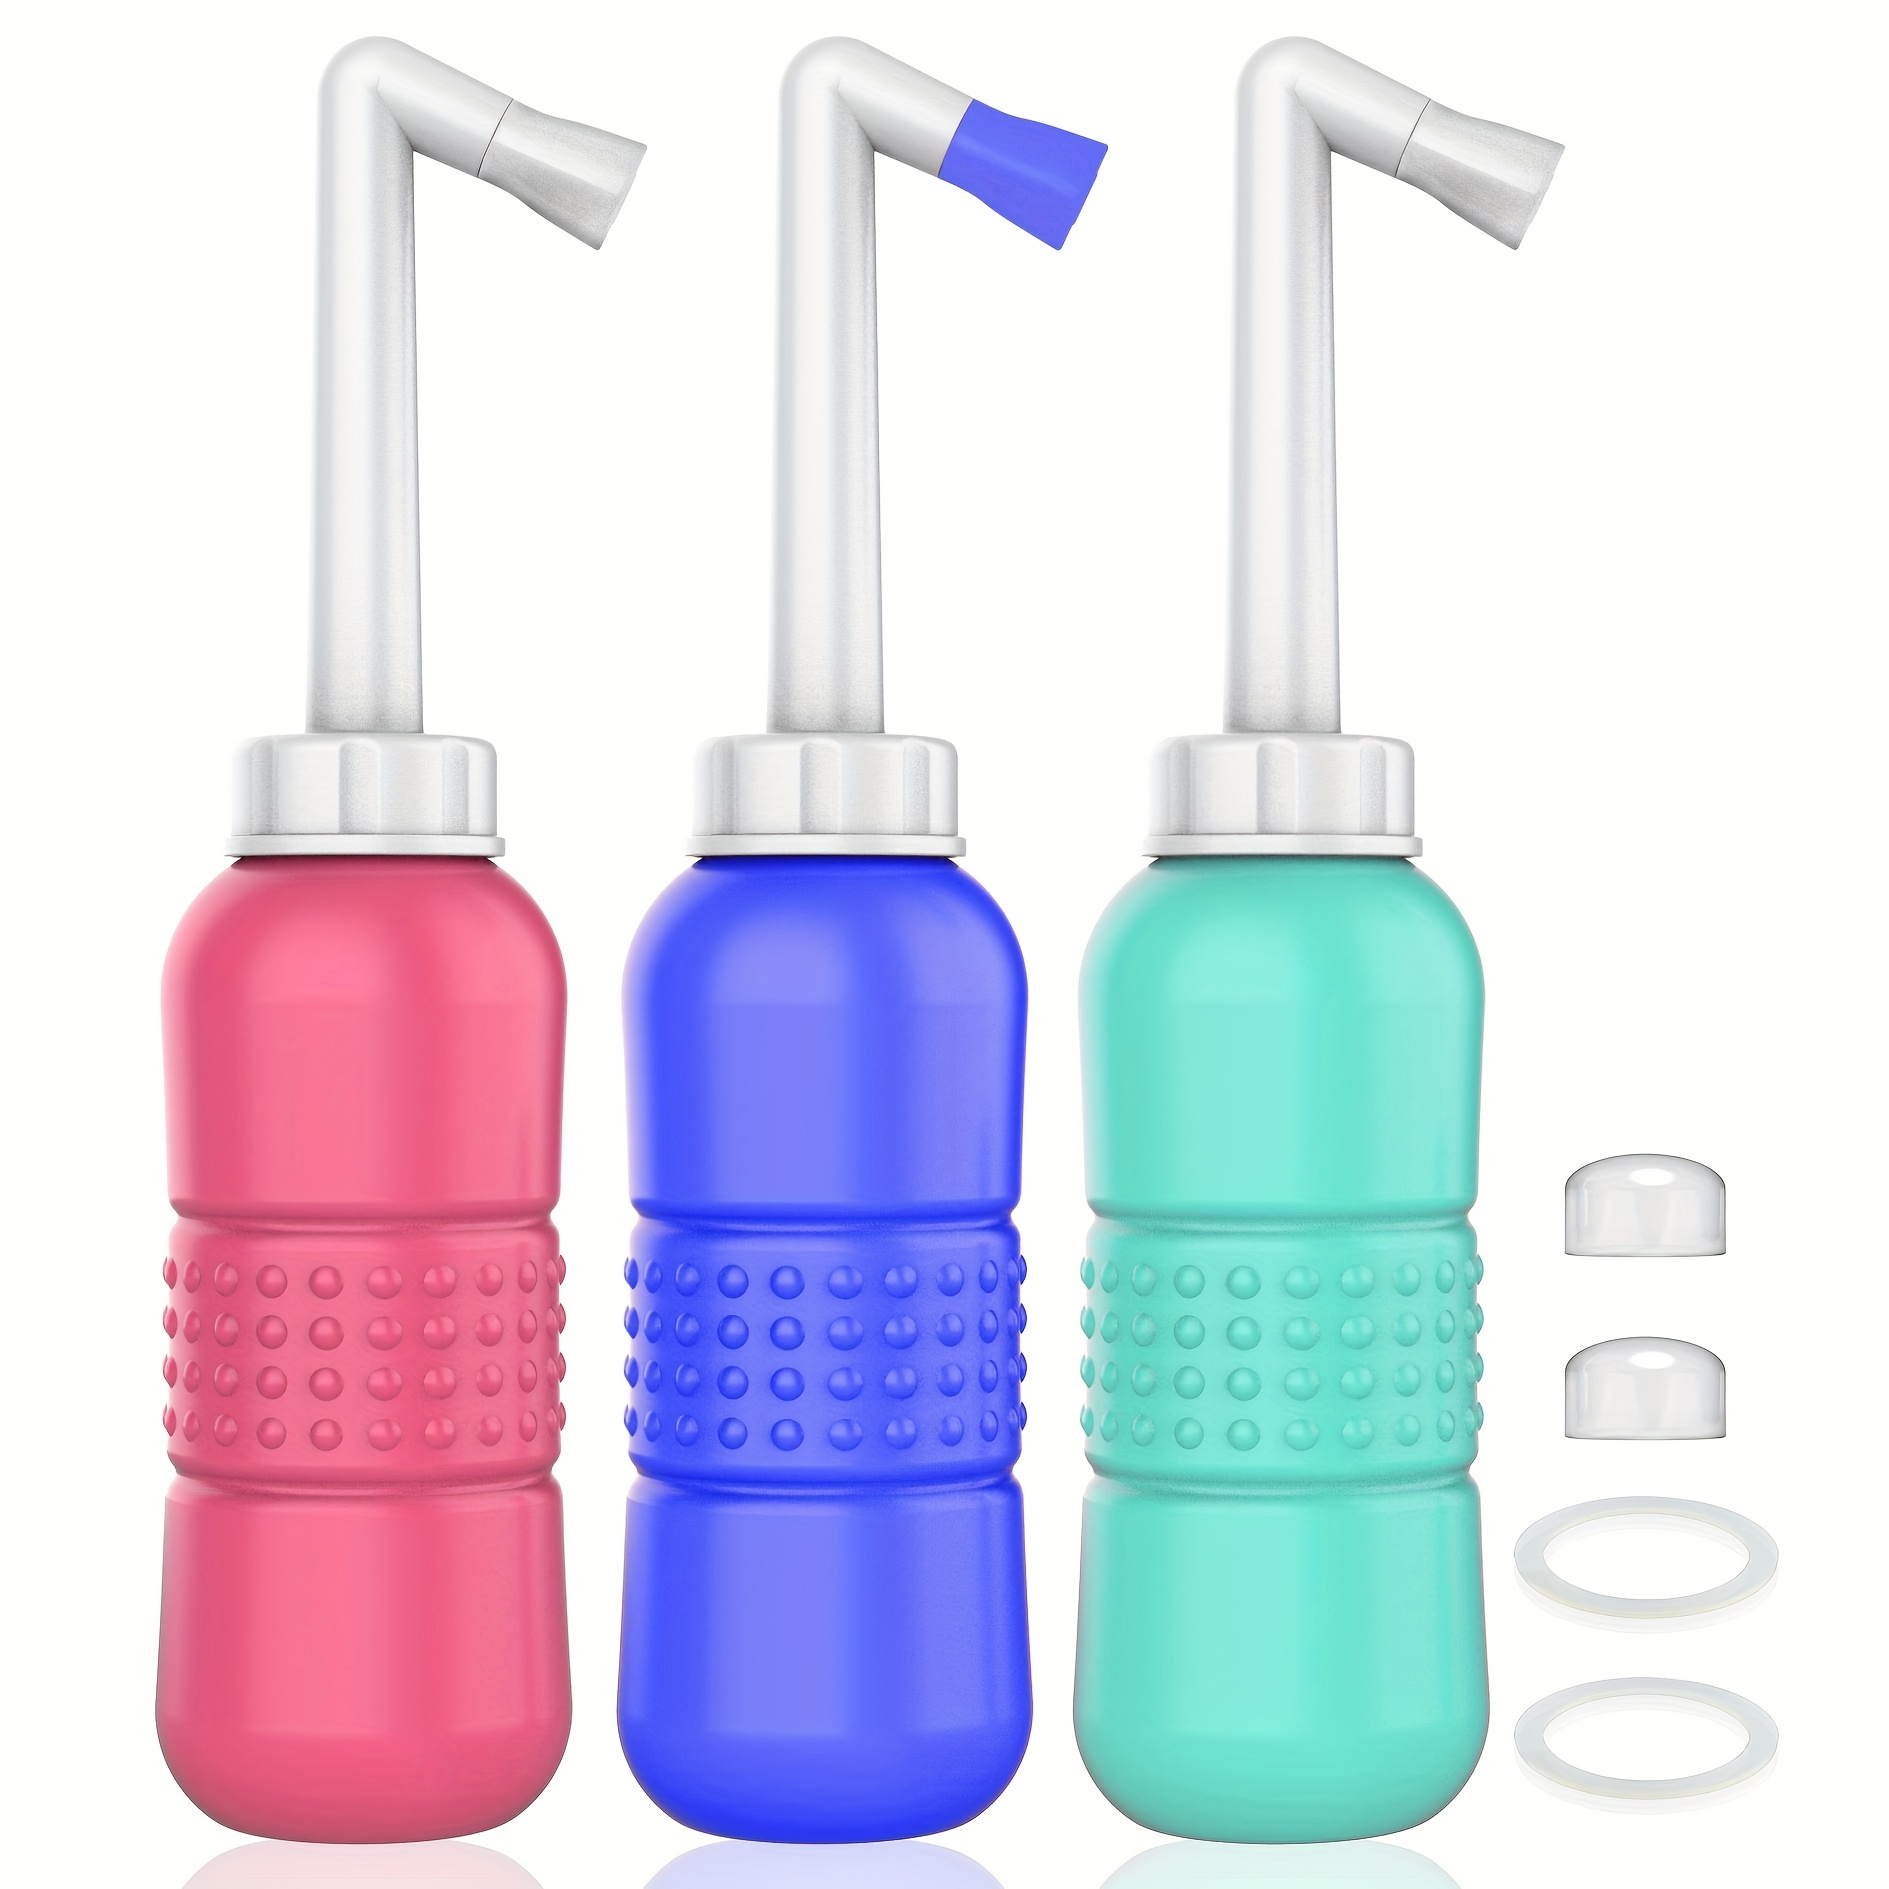 Portable Bidet Sprayer/Peri Bottle for Postpartum Perineal Care-hemmoroid€